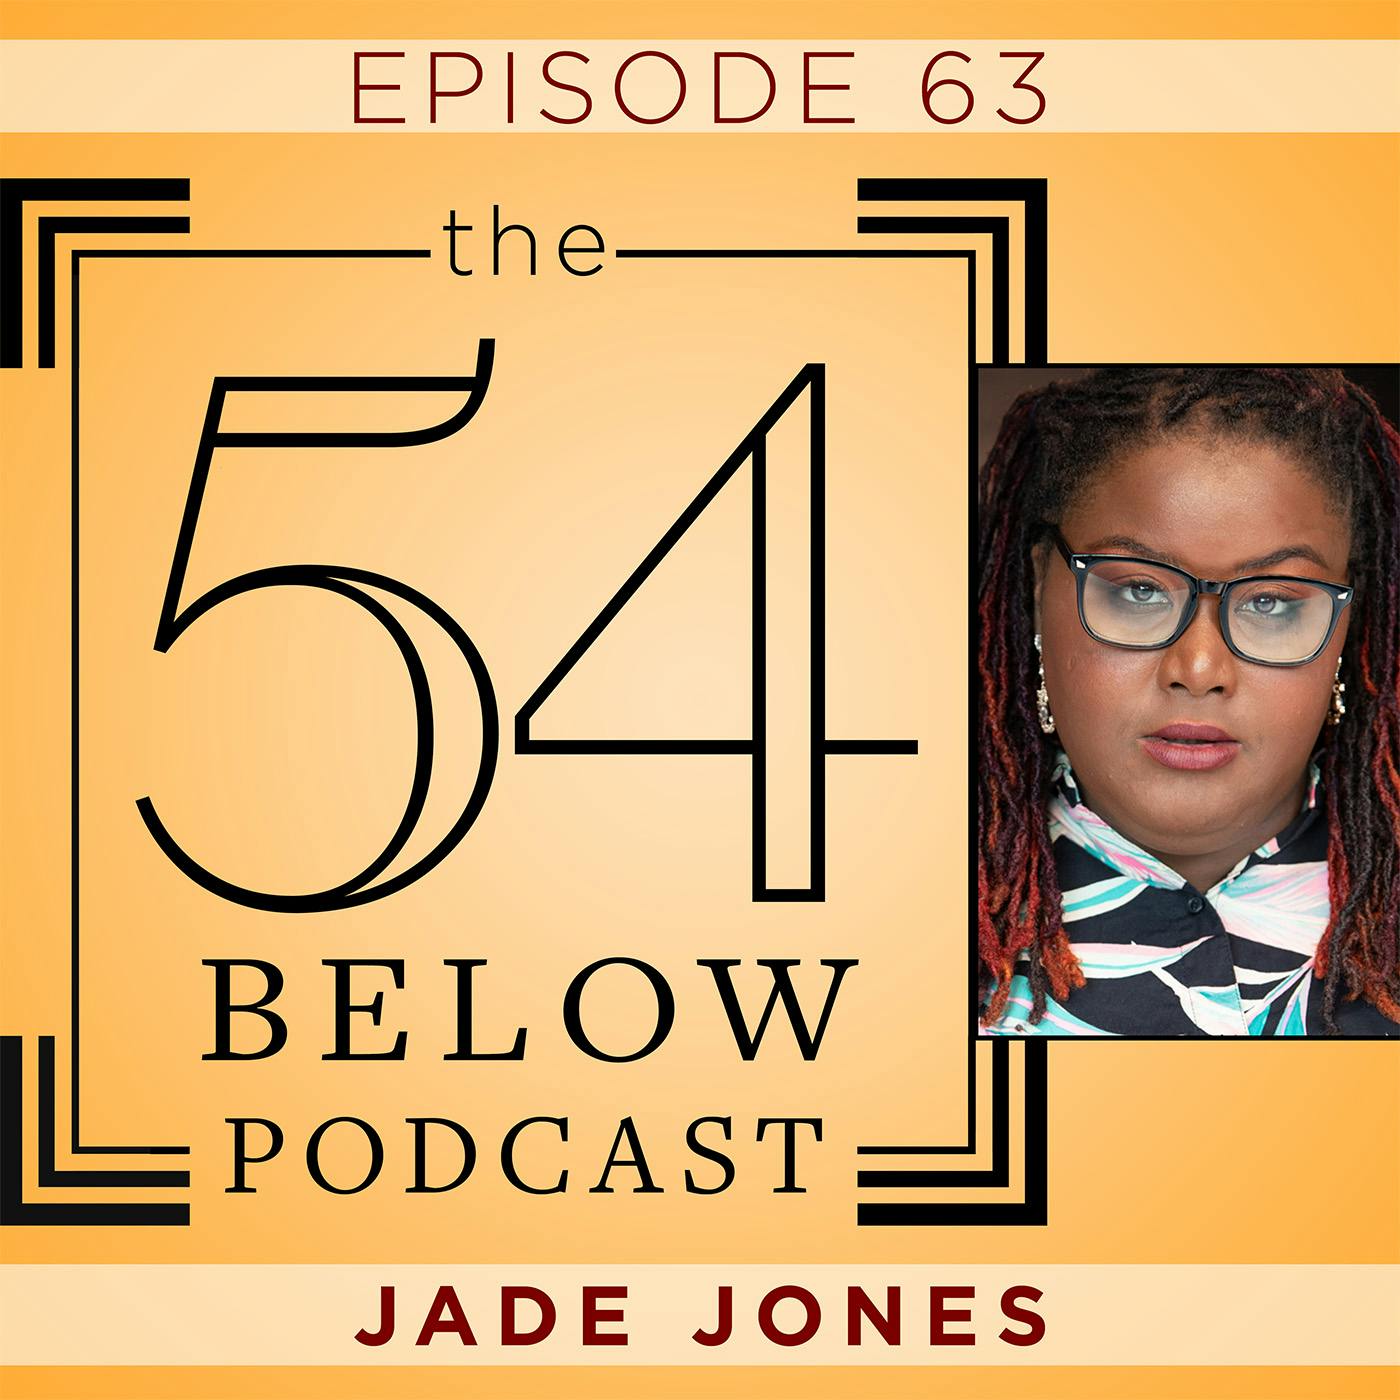 Episode 63: JADE JONES